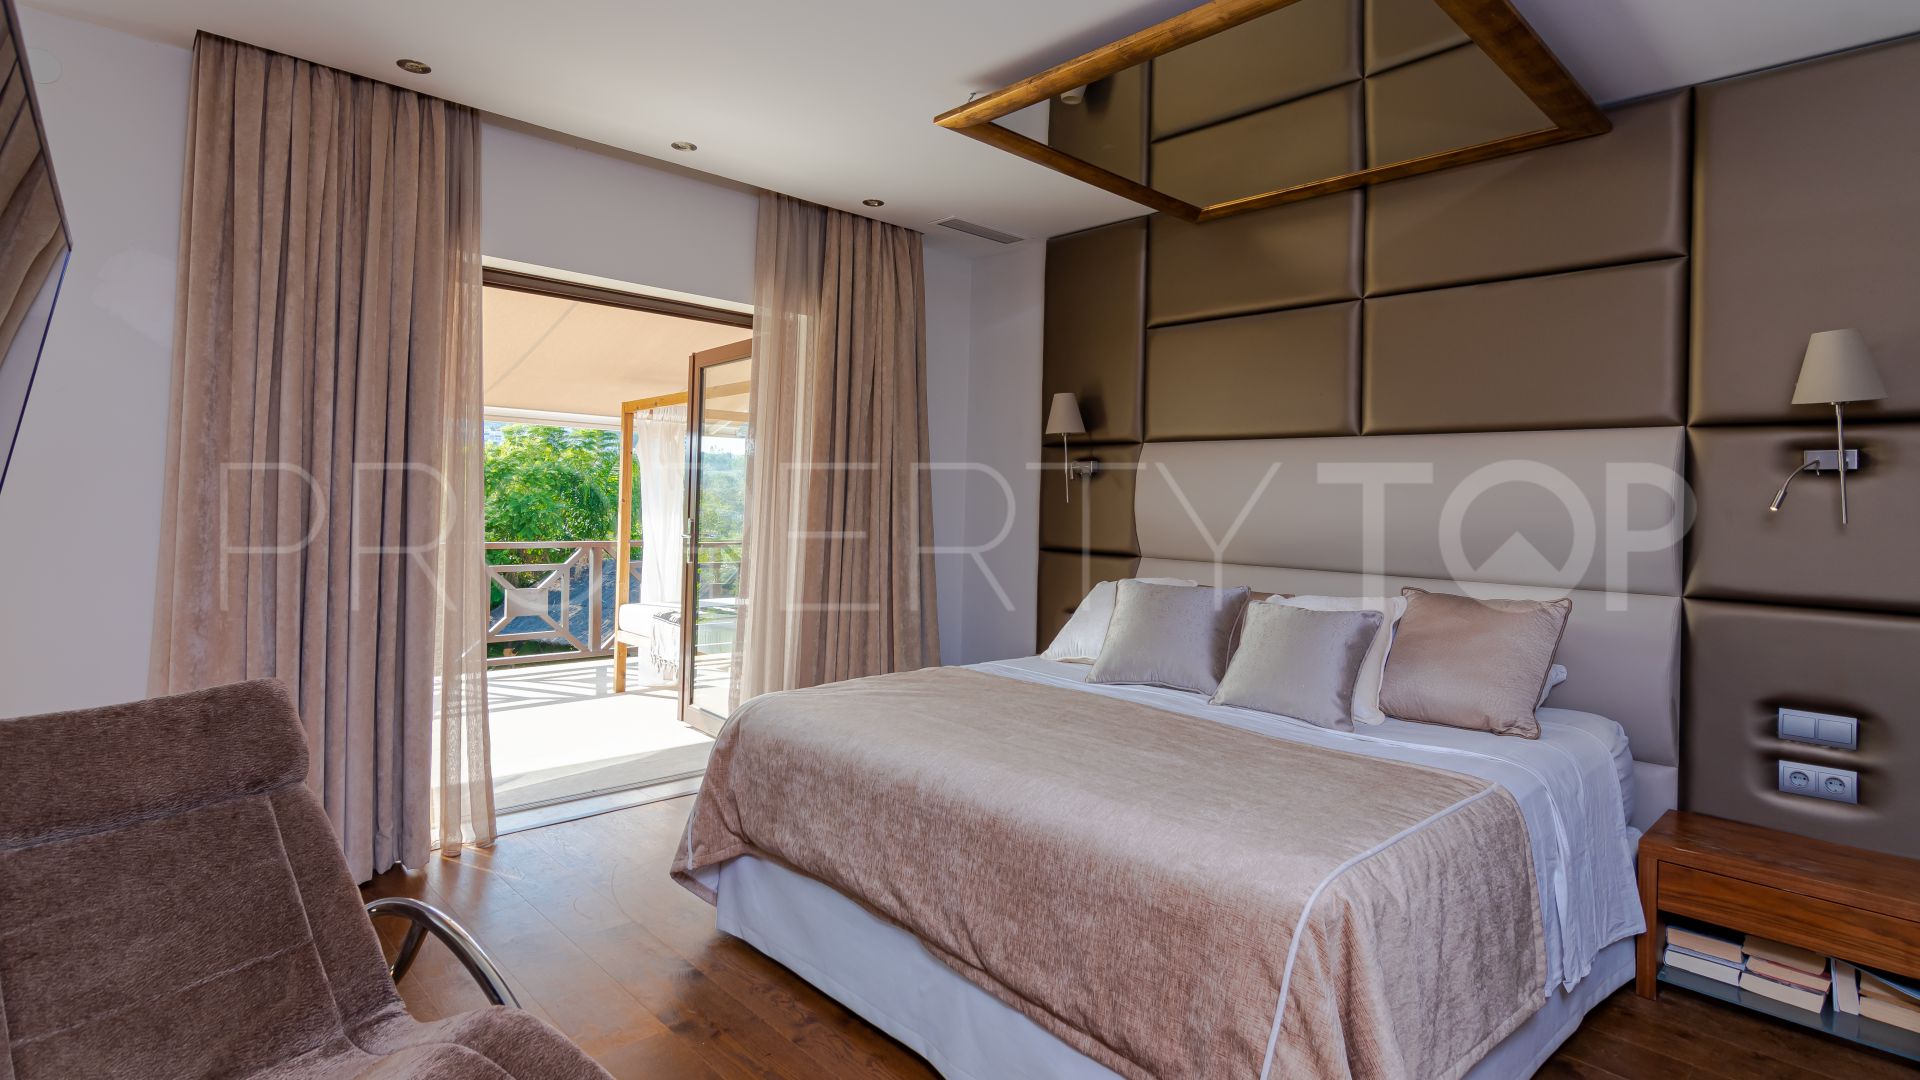 For sale villa with 6 bedrooms in Los Naranjos